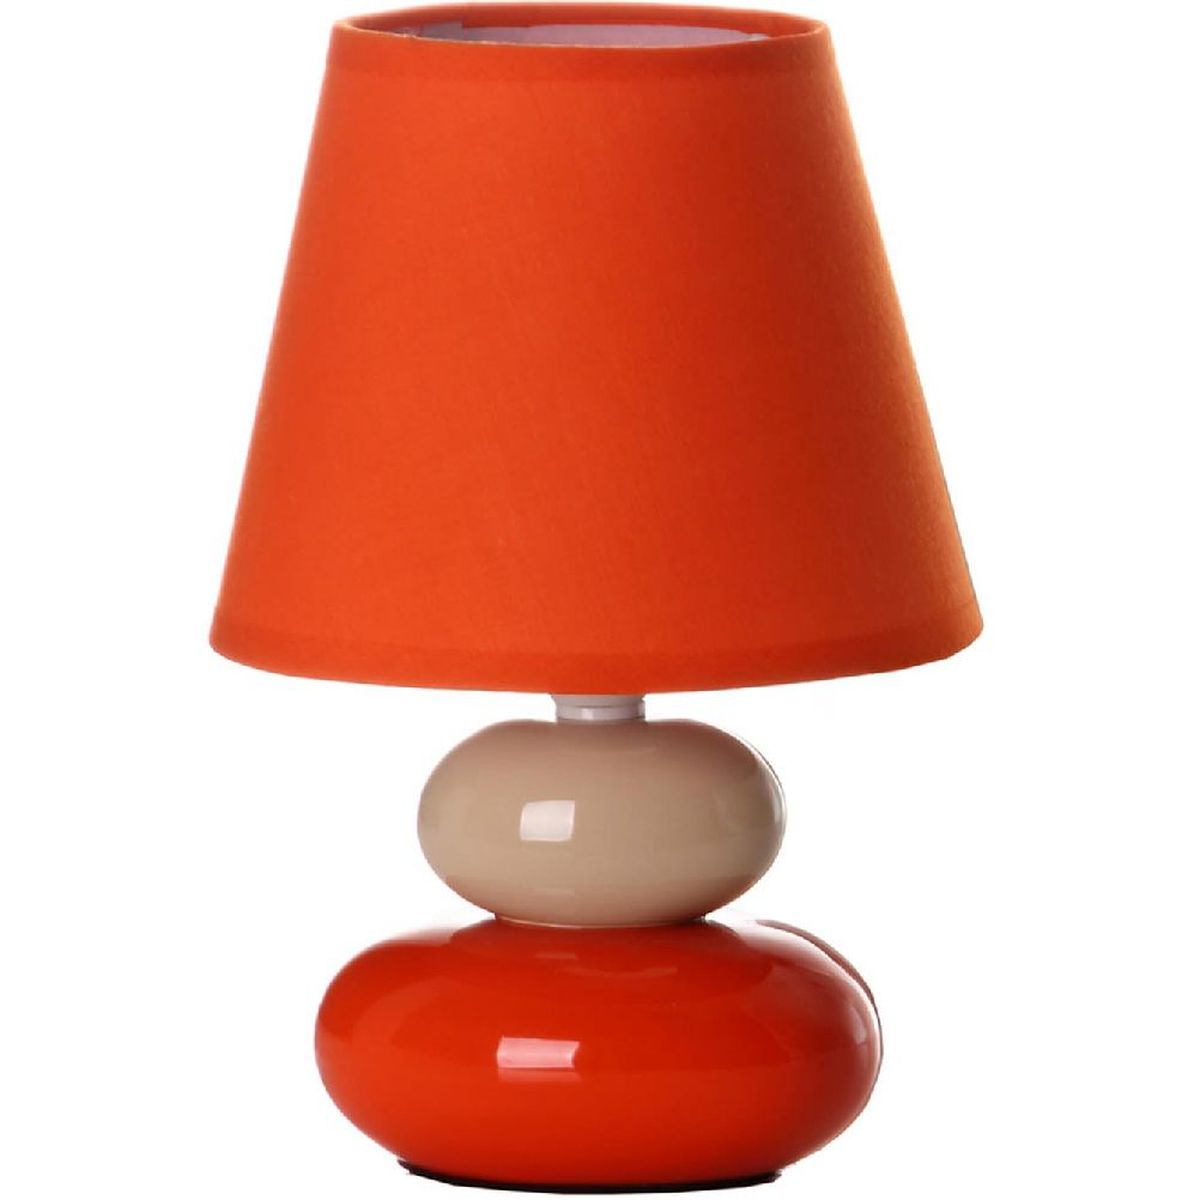 Lampe galets - Orange et crme - 22 cm